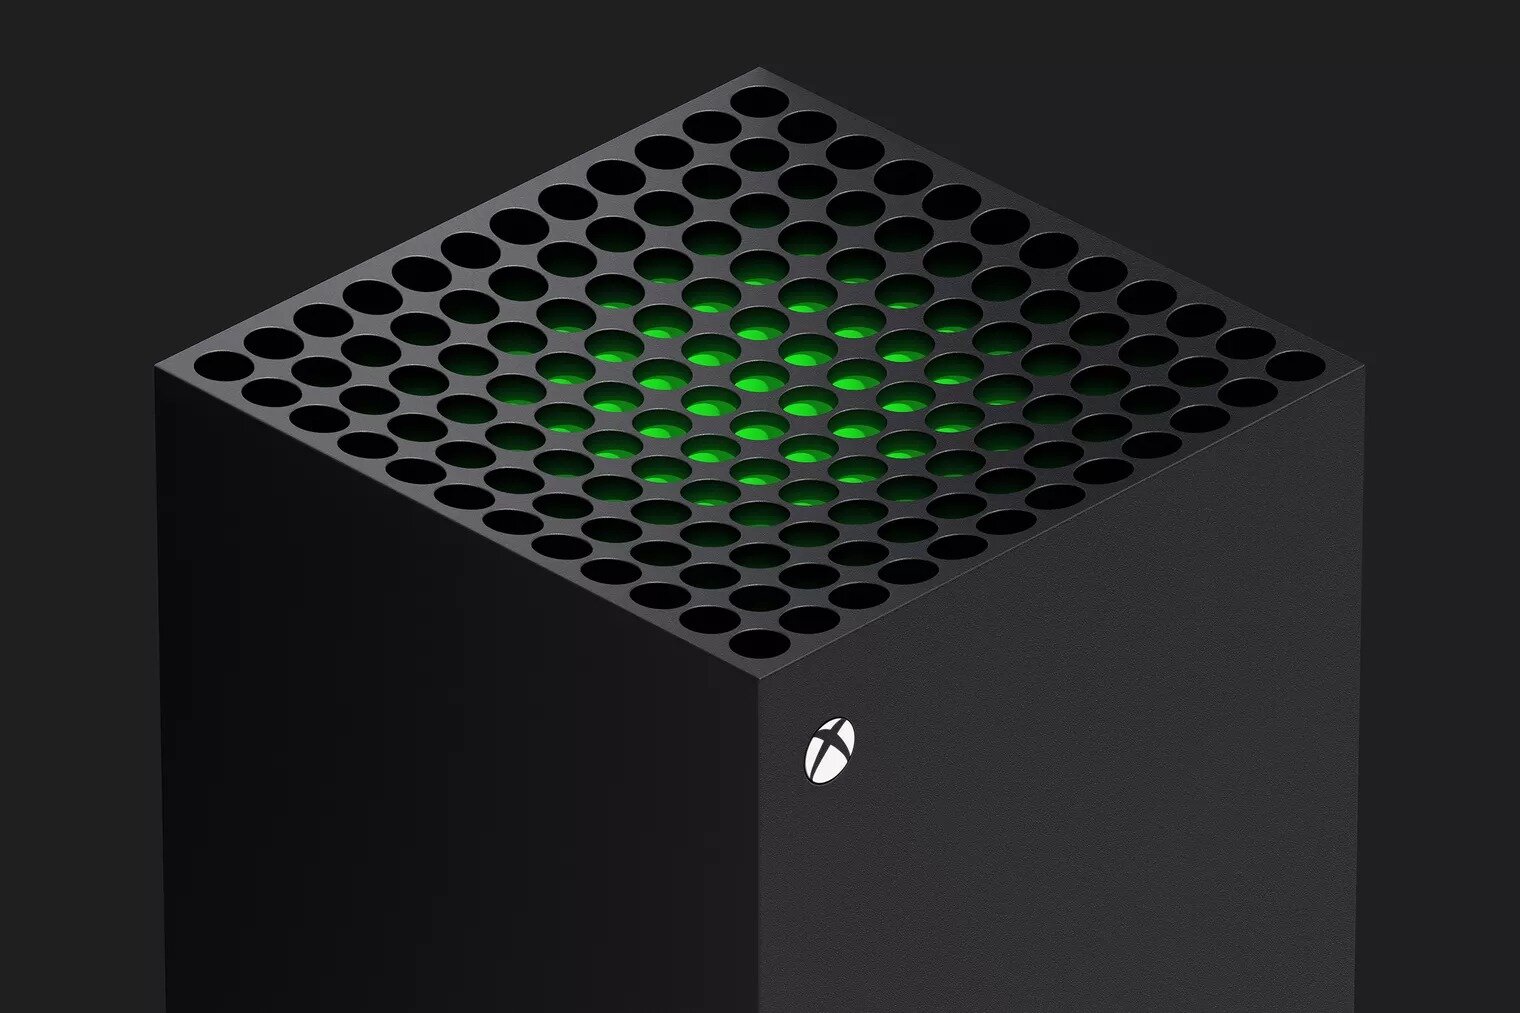 Στις 10 Νοεμβρίου η κυκλοφορία του Xbox Series X με τιμή €499 και με έναρξη προπαραγγελιών στις 22/9